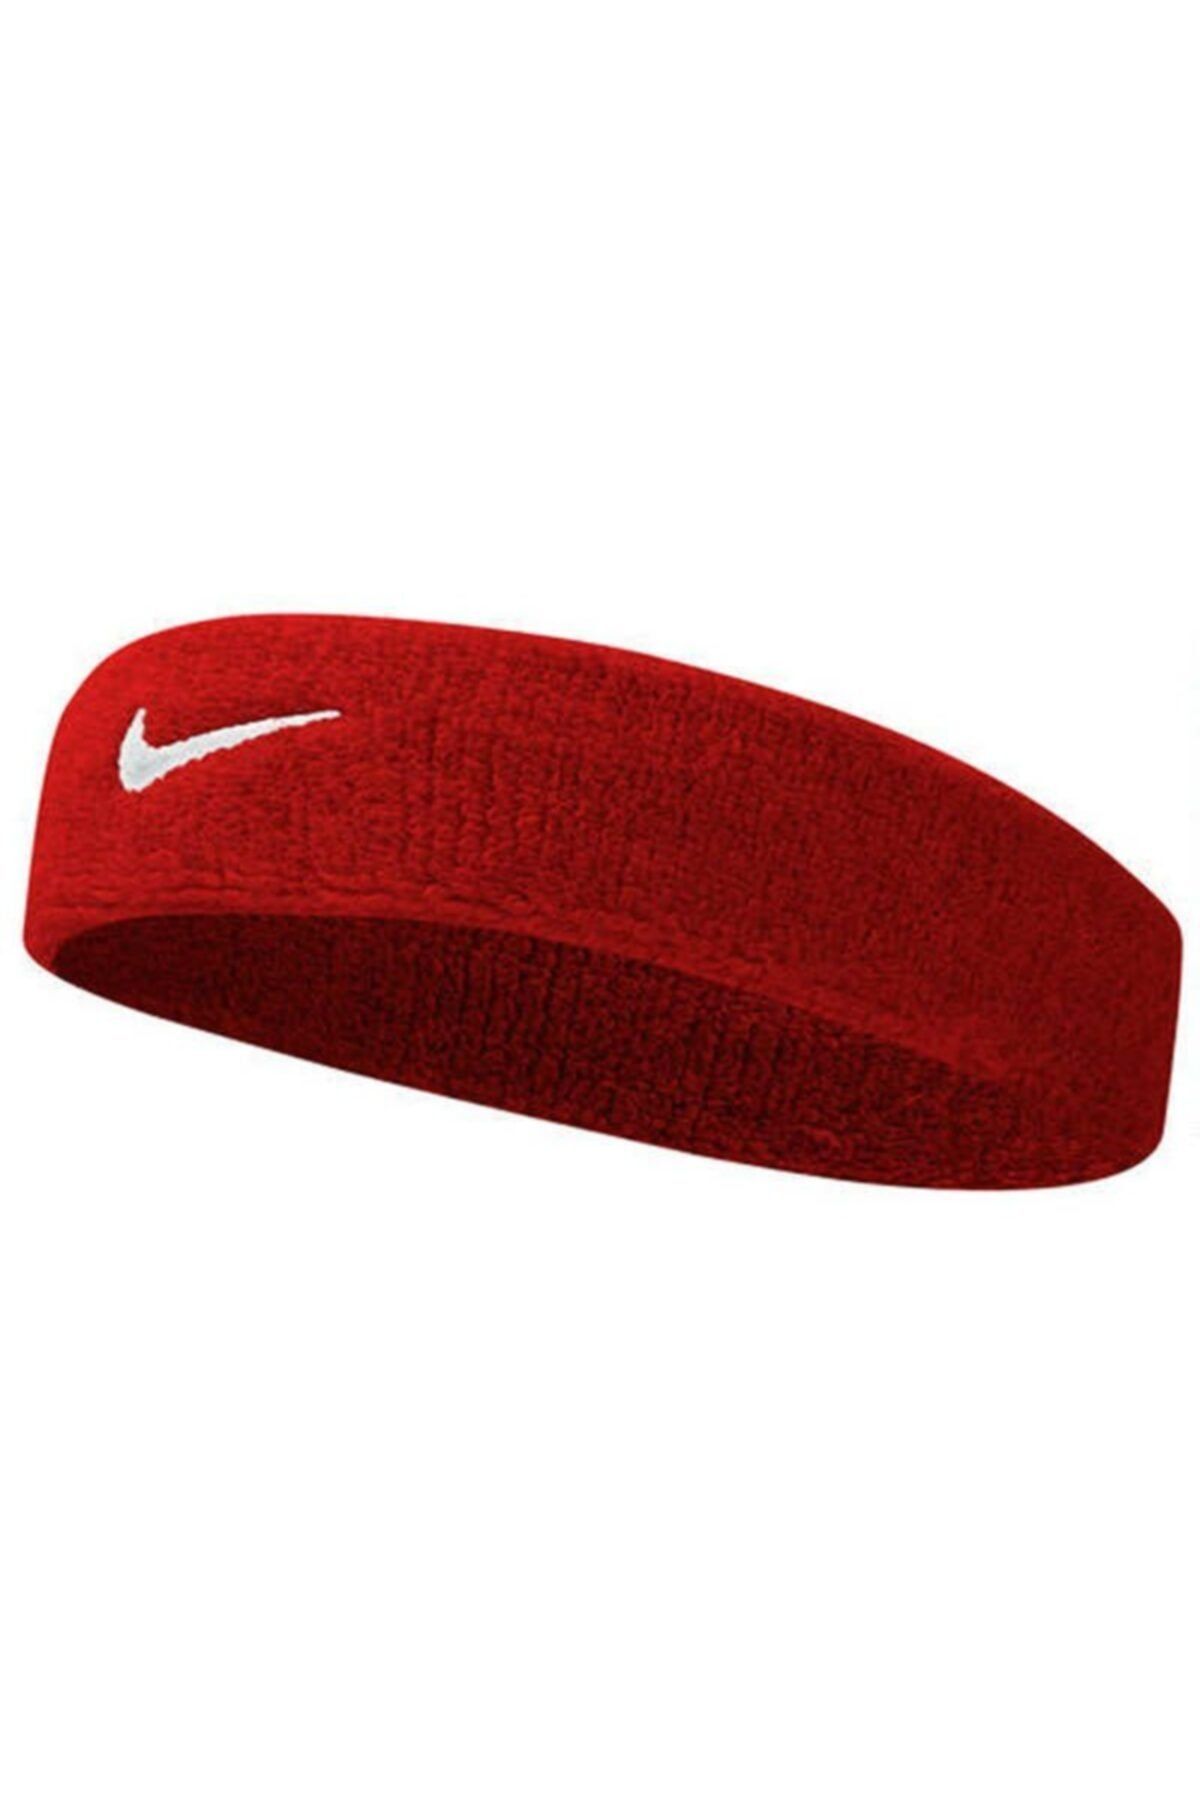 Nike Swoosh Headband Havlu Saç Bandı Kırmızı Renk